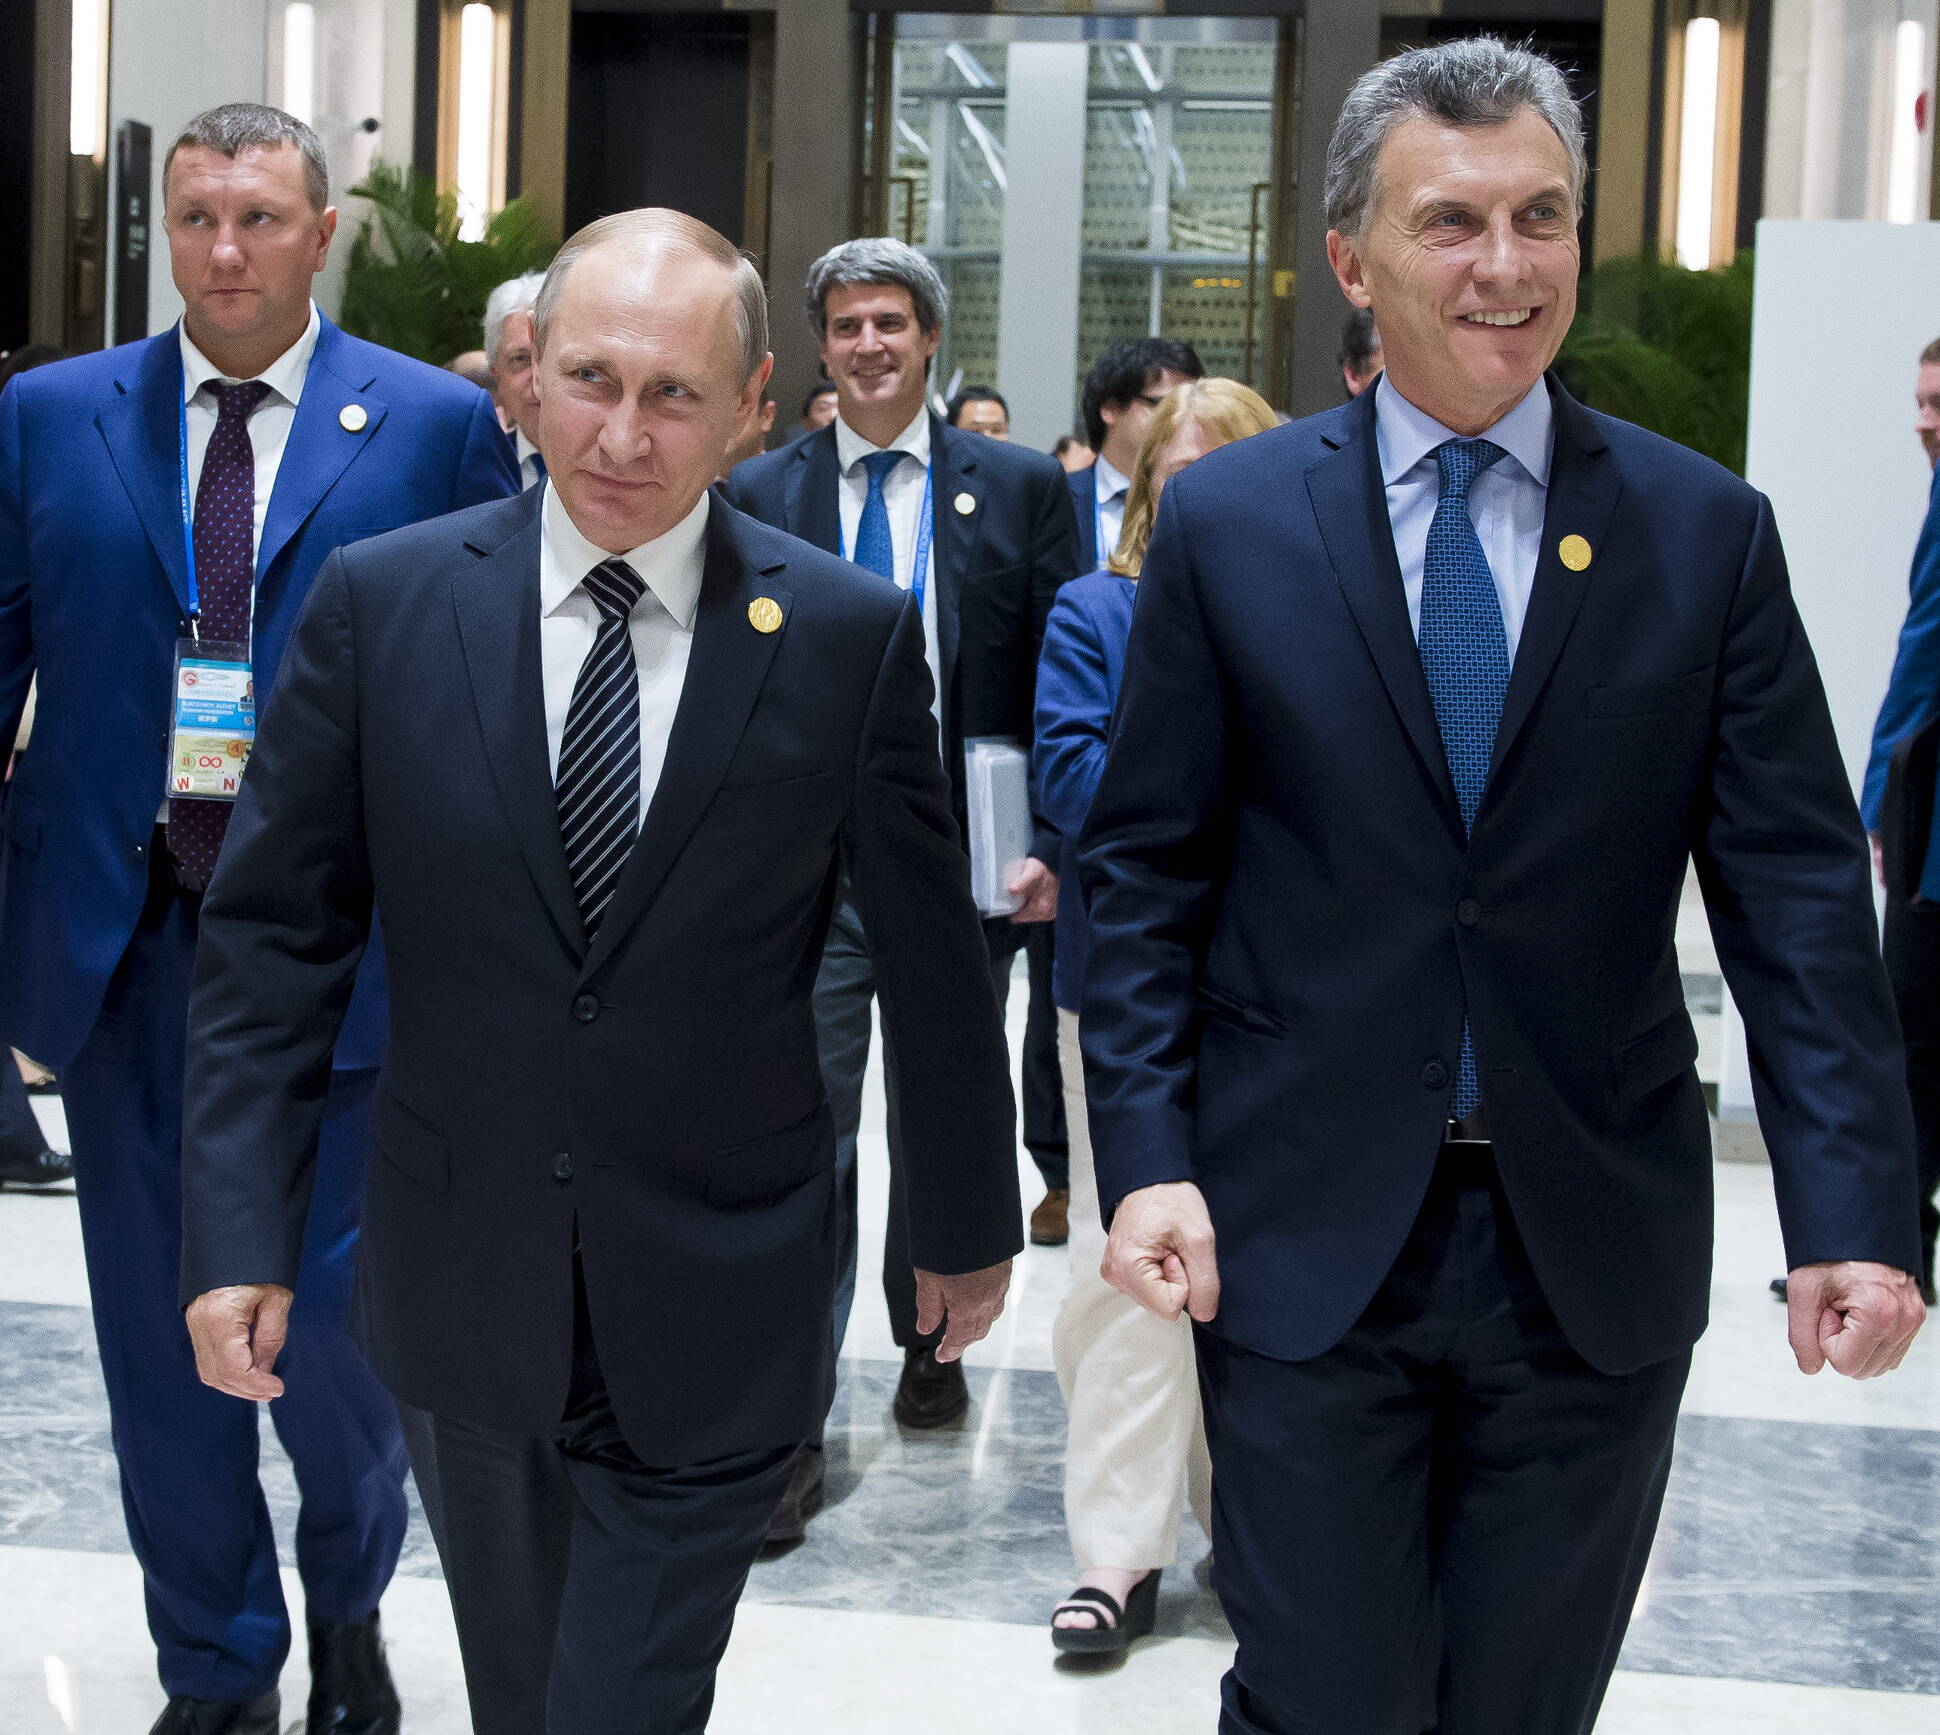 El presidente Putin a su par Mauricio Macri: “La Argentina es un socio muy relevante